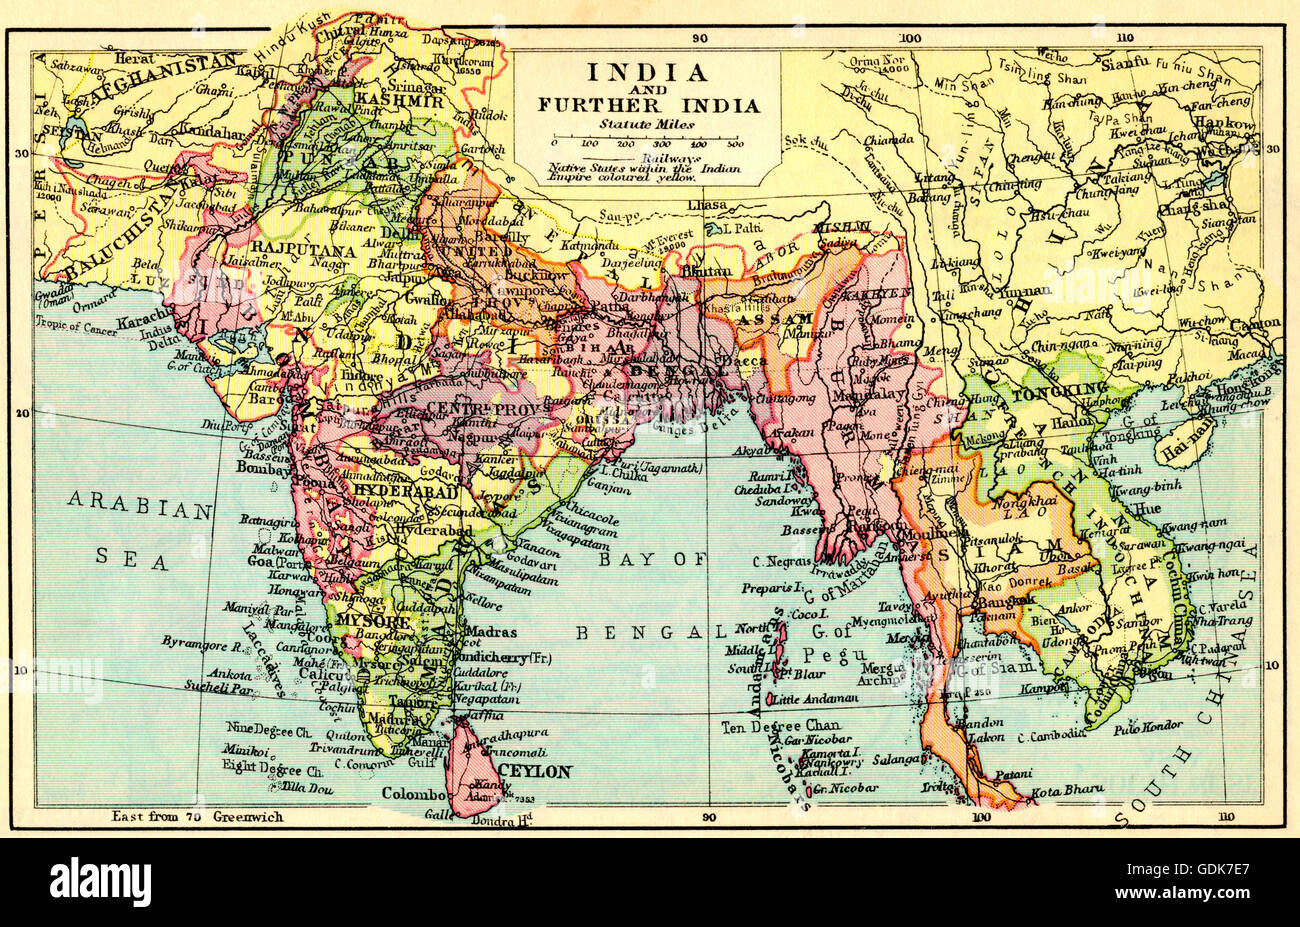 Un mapa de 1930 de la India y la India. Foto de stock